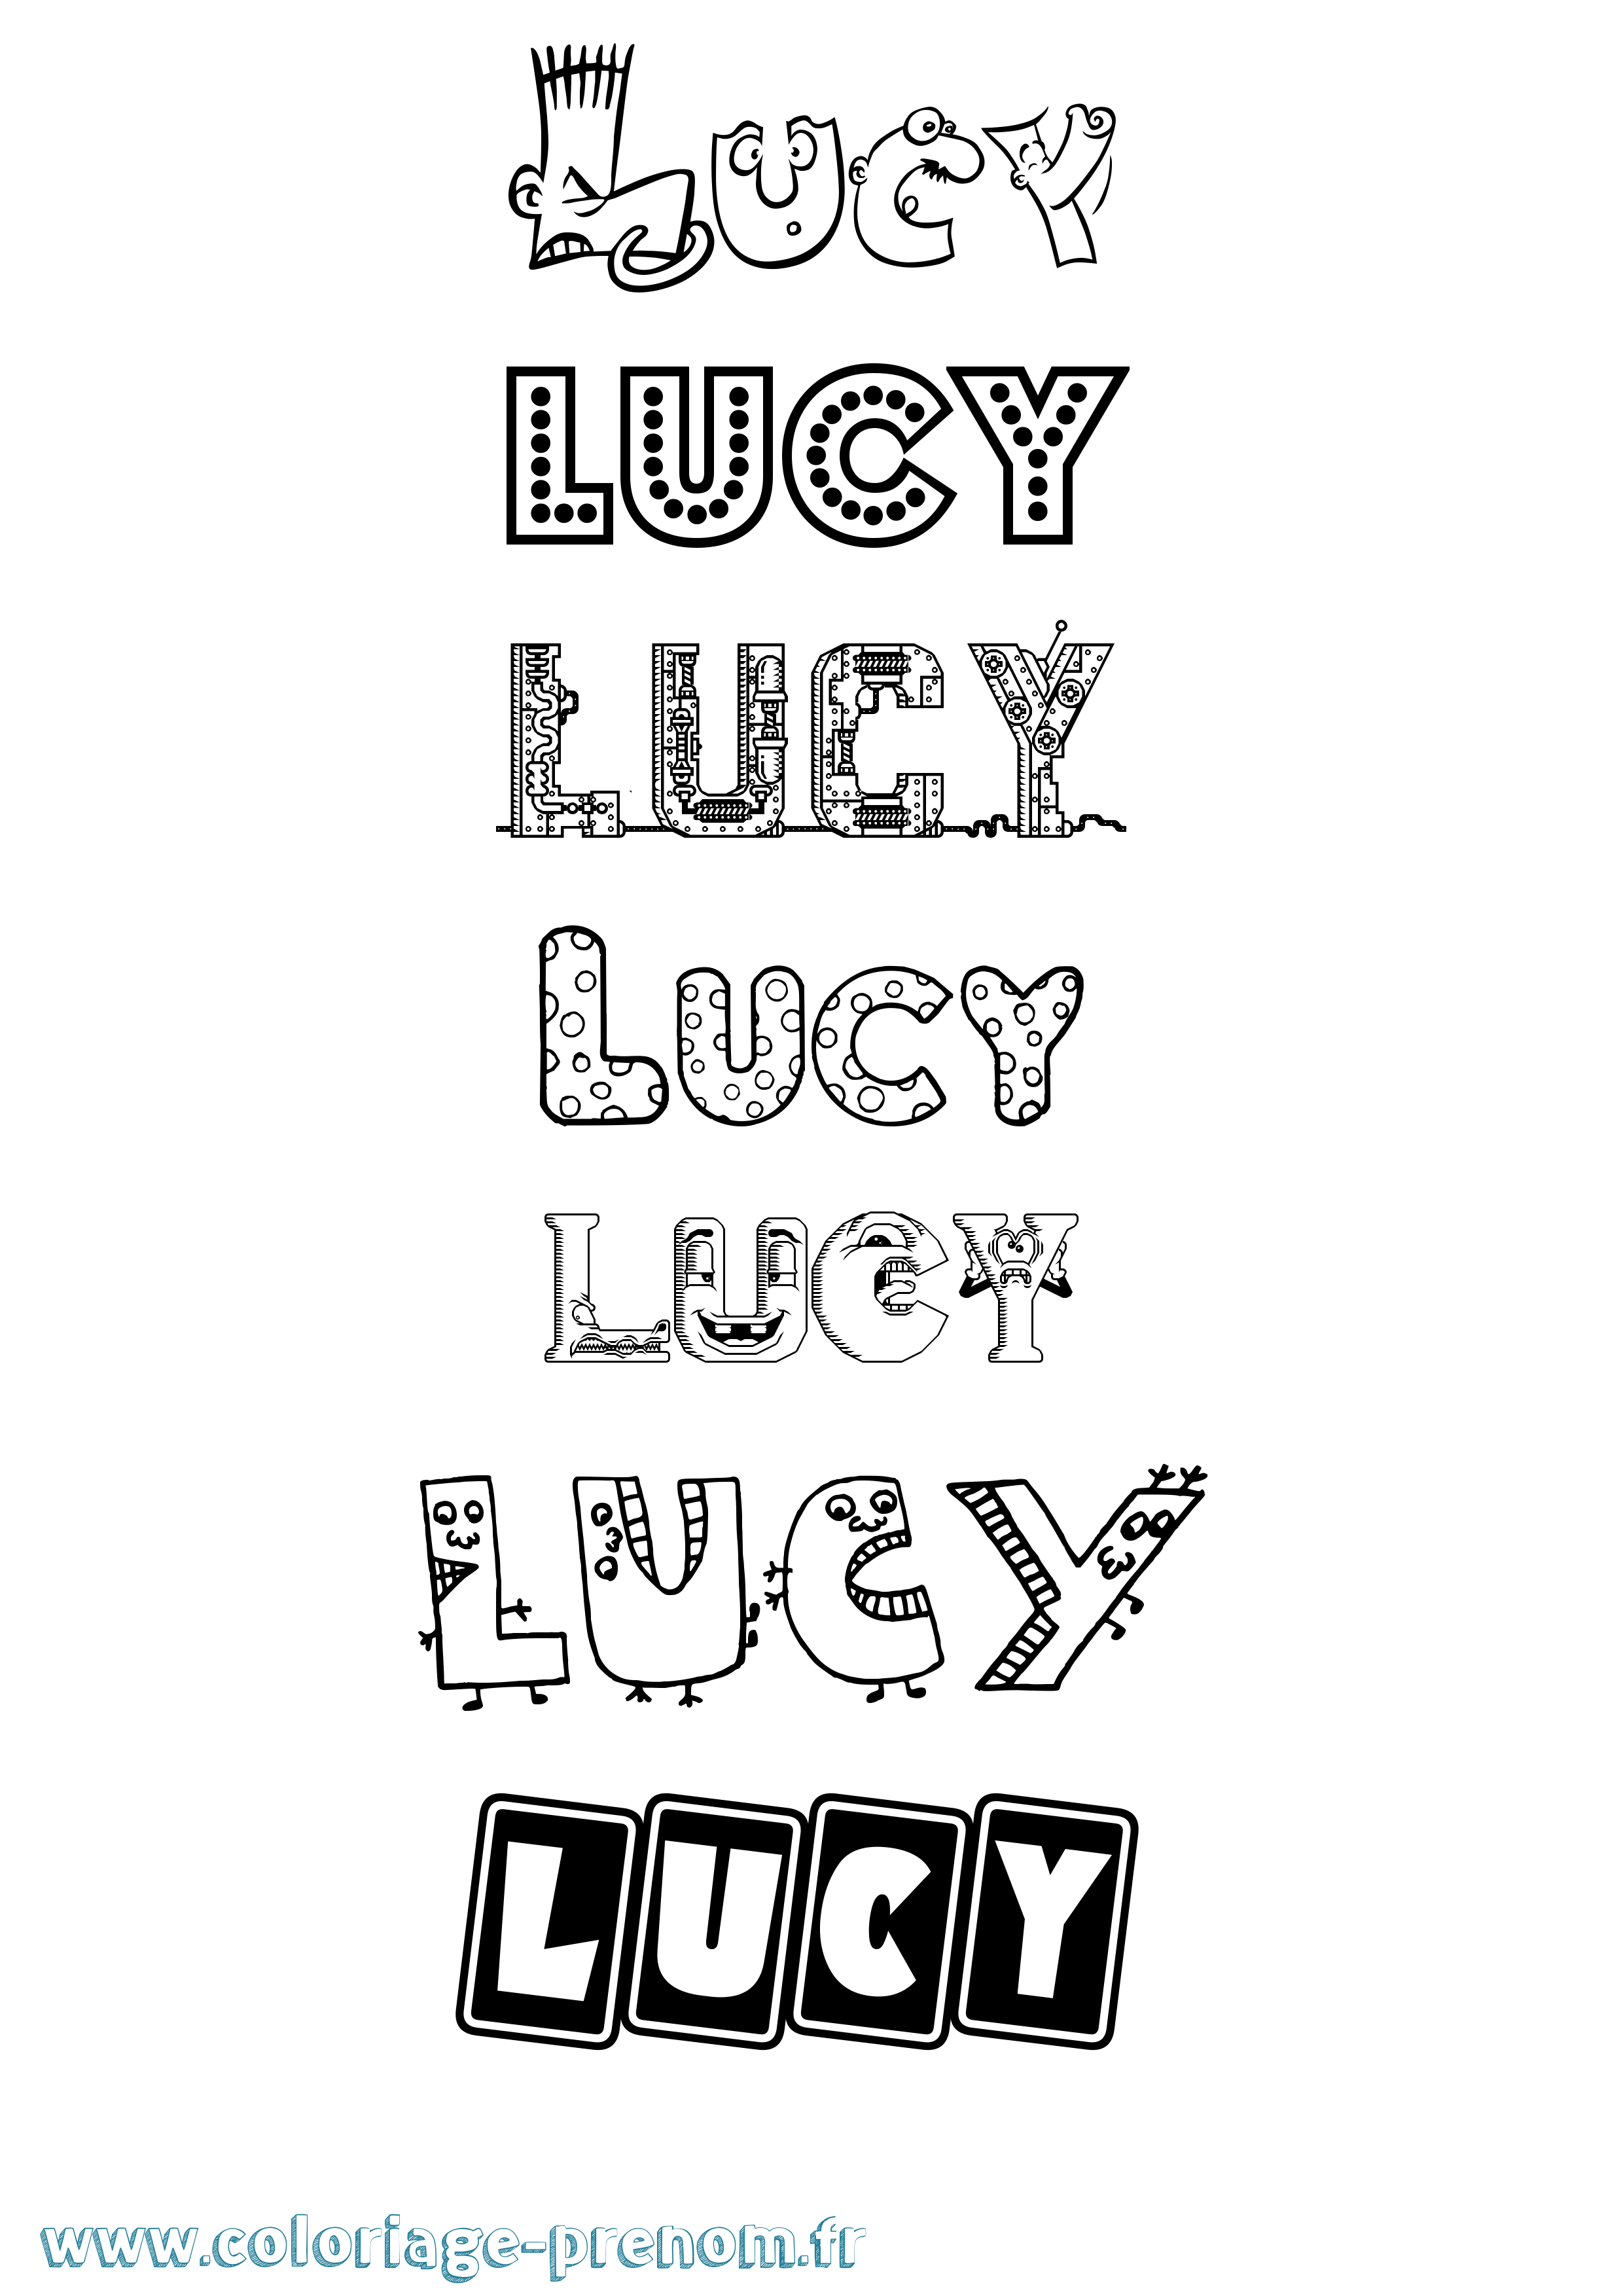 Coloriage prénom Lucy Fun